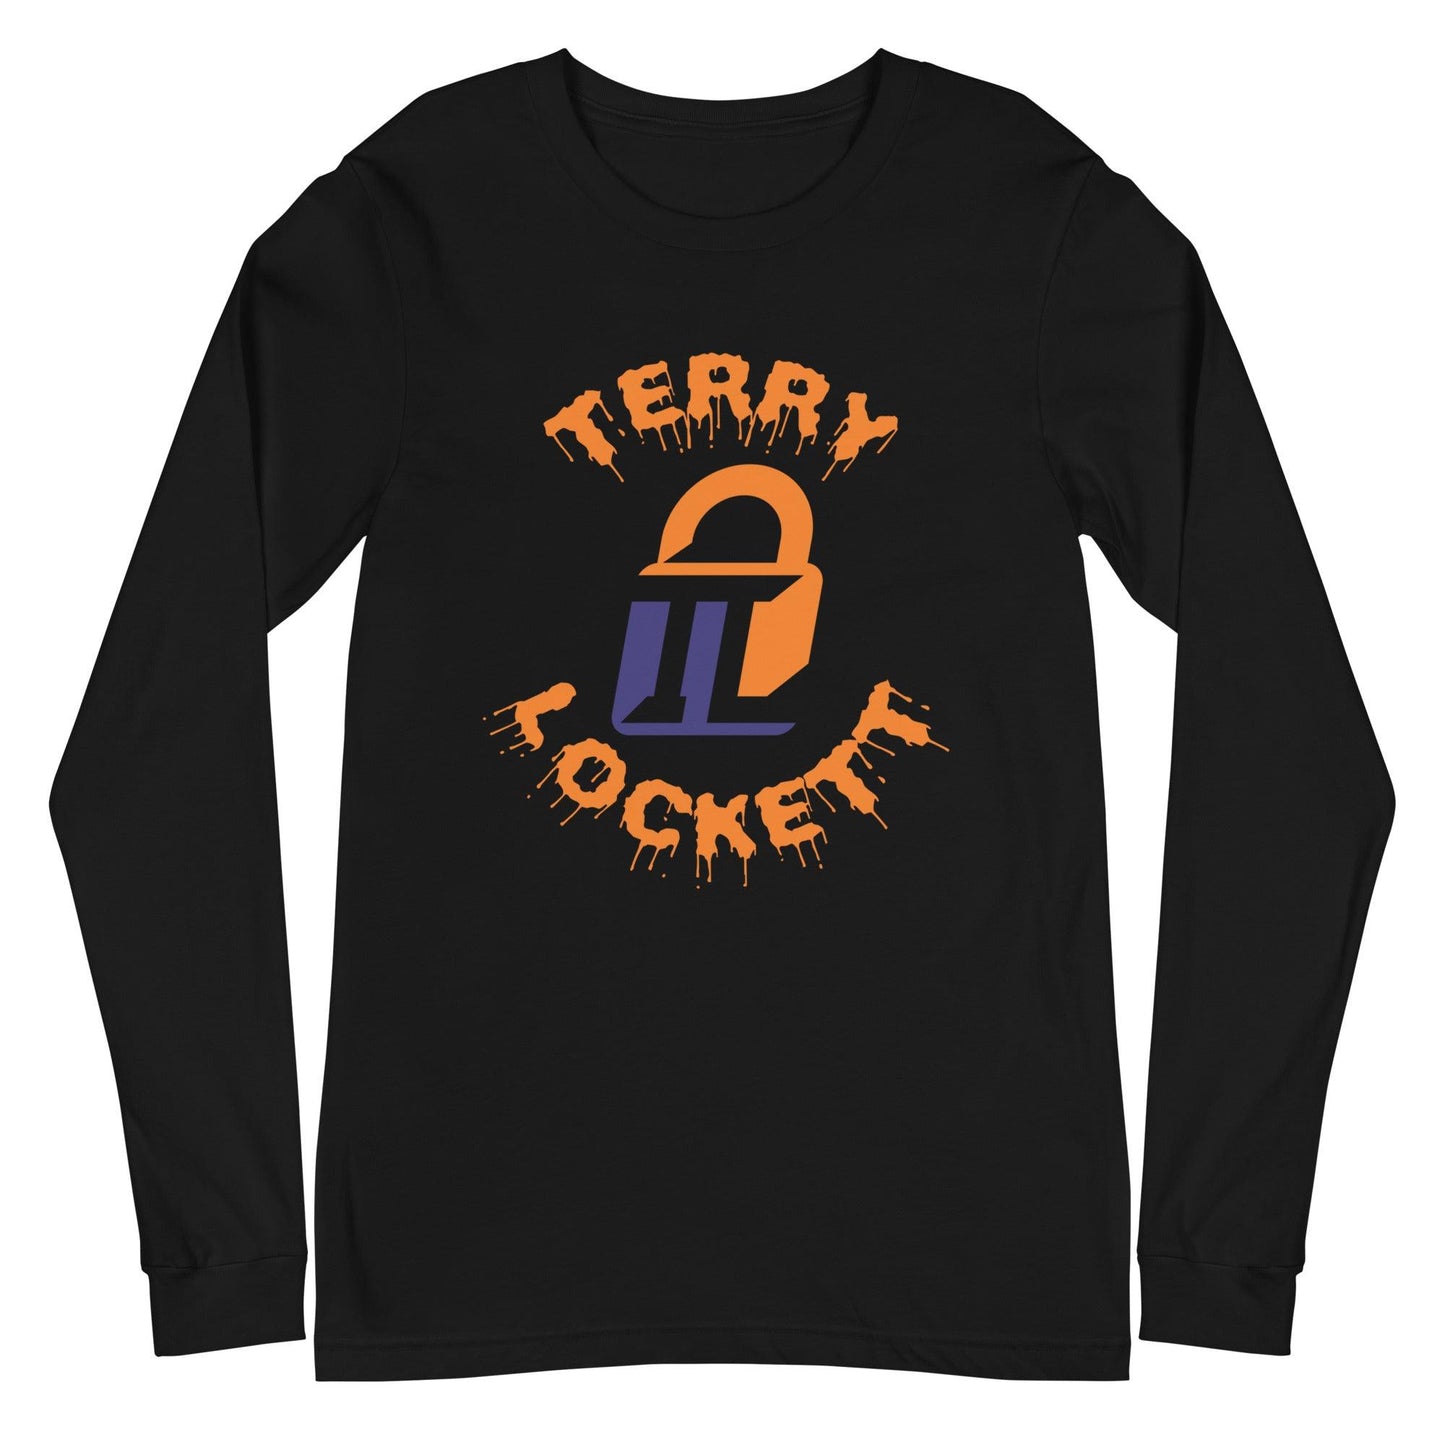 Terry Lockett "Elite" Long Sleeve Tee - Fan Arch